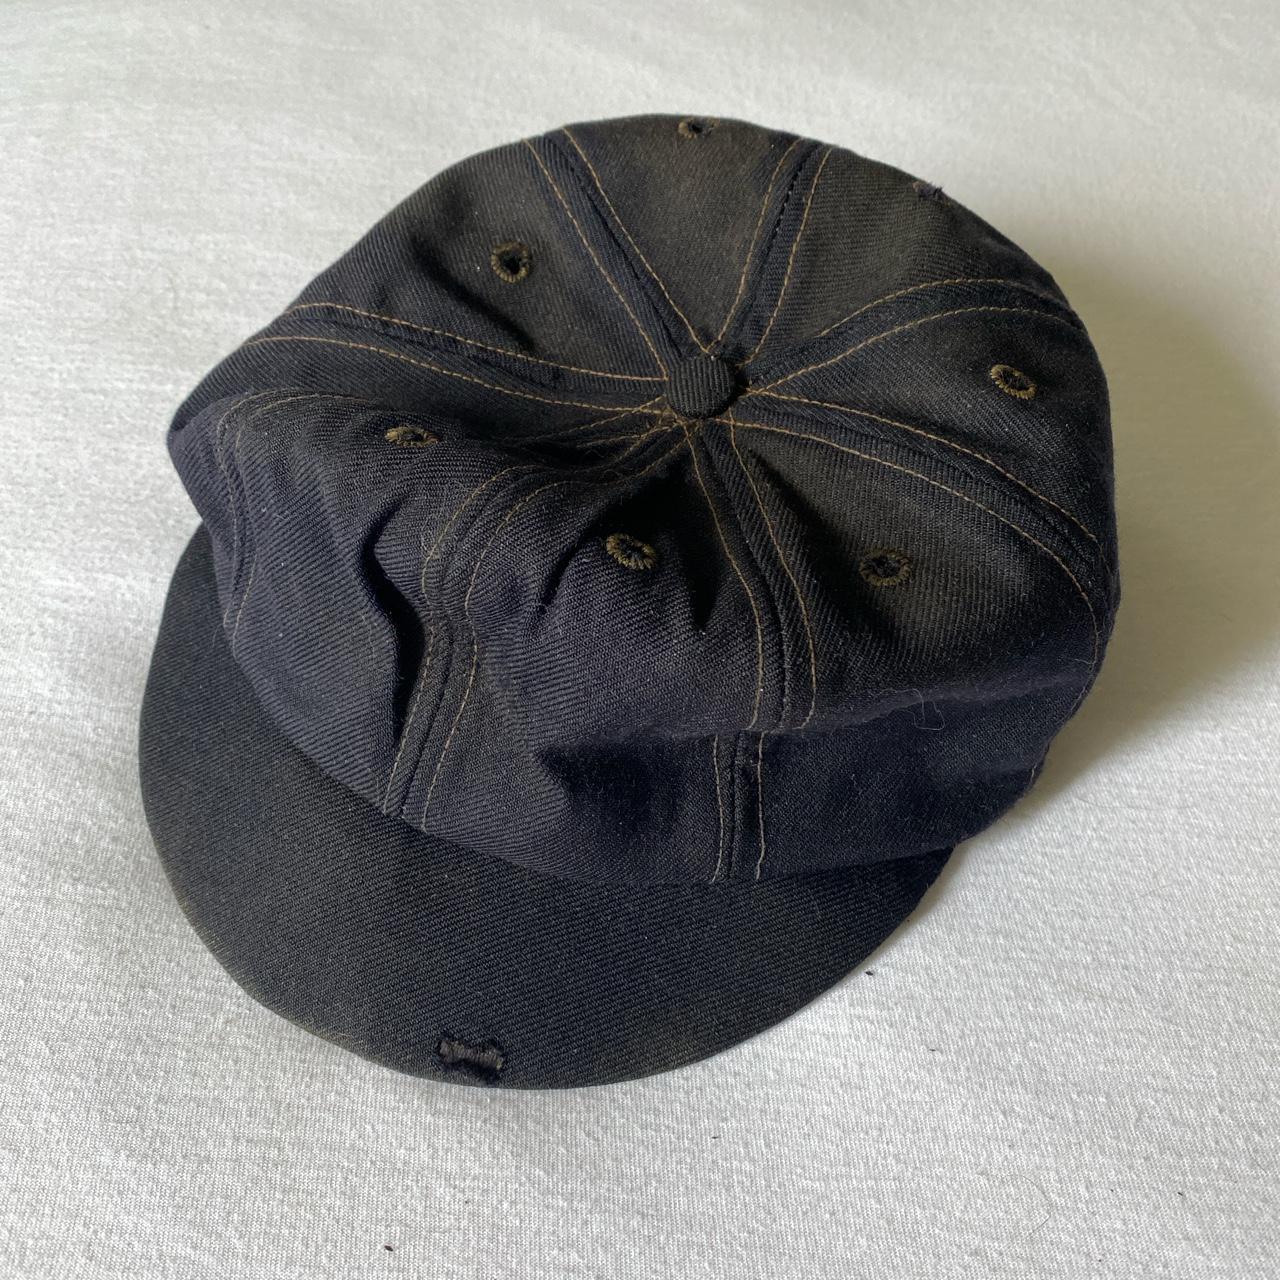 Vintage Men's Caps - Black